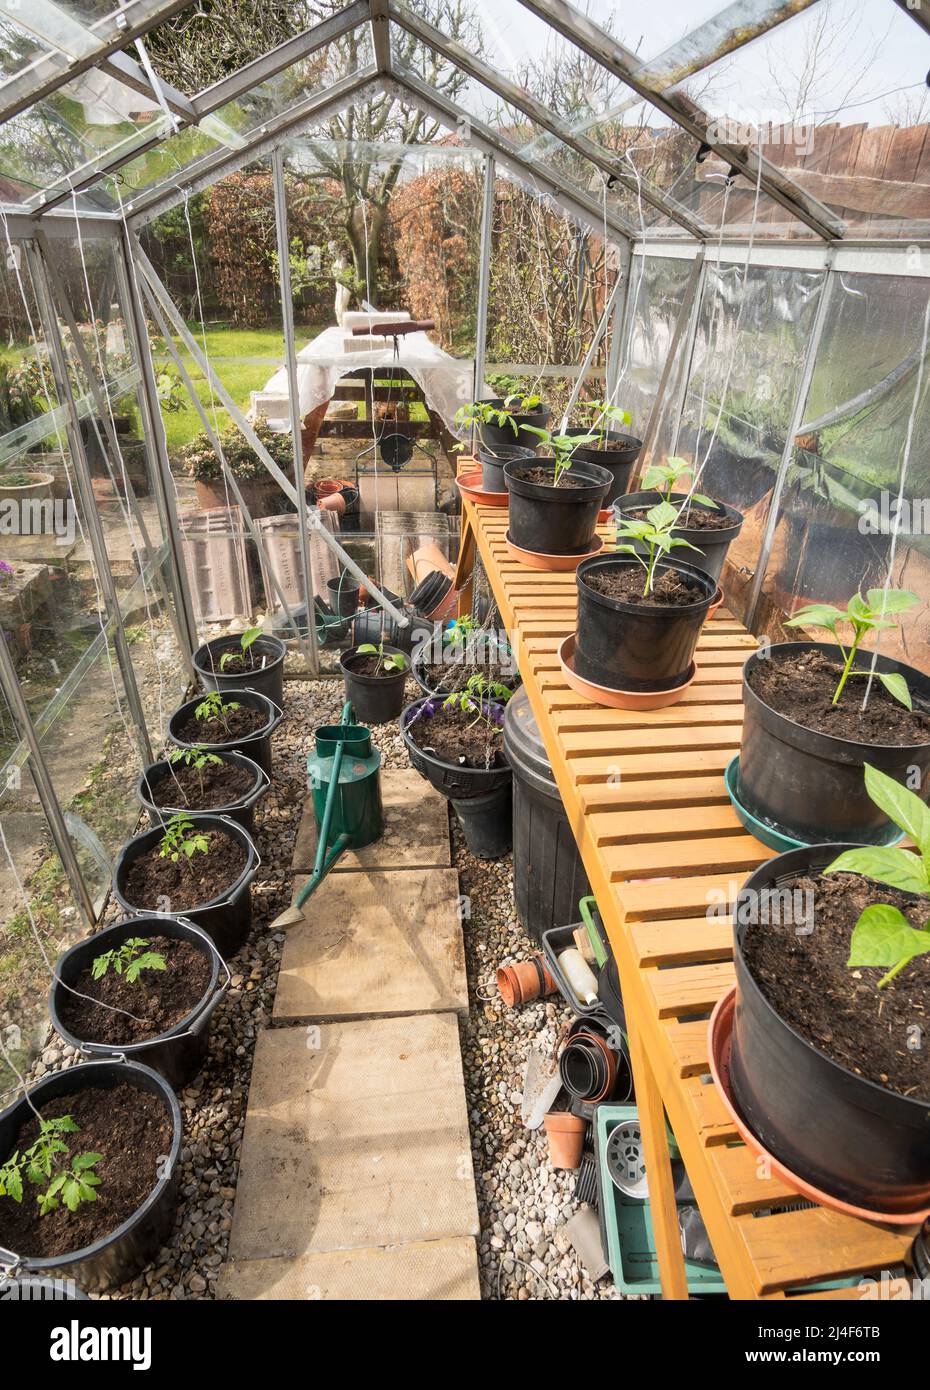 Junge Tomaten- und Pfefferpflanzen, die in einem Gewächshaus eines Hobbygärtners wachsen, England, Großbritannien Stockfoto